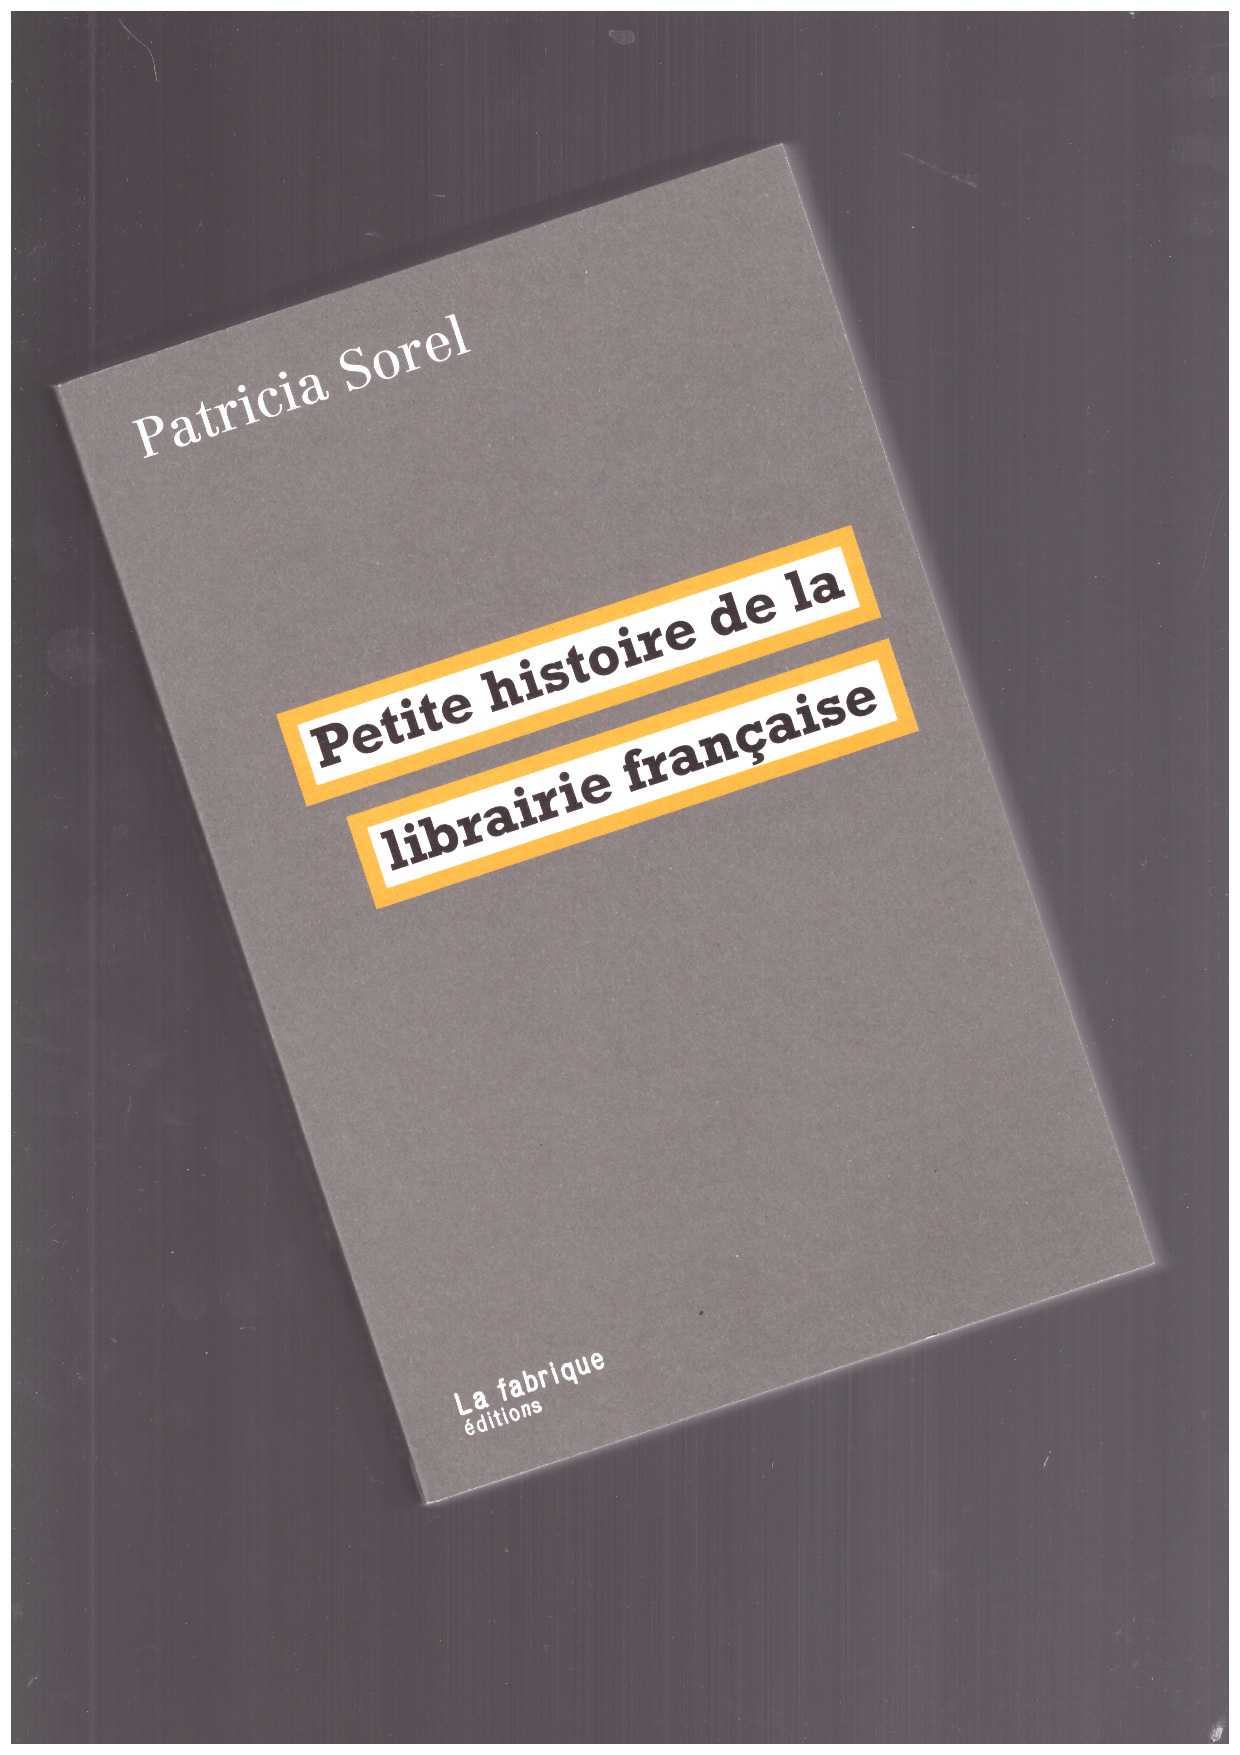 SOREL, Patricia - Petite histoire de la librairie française